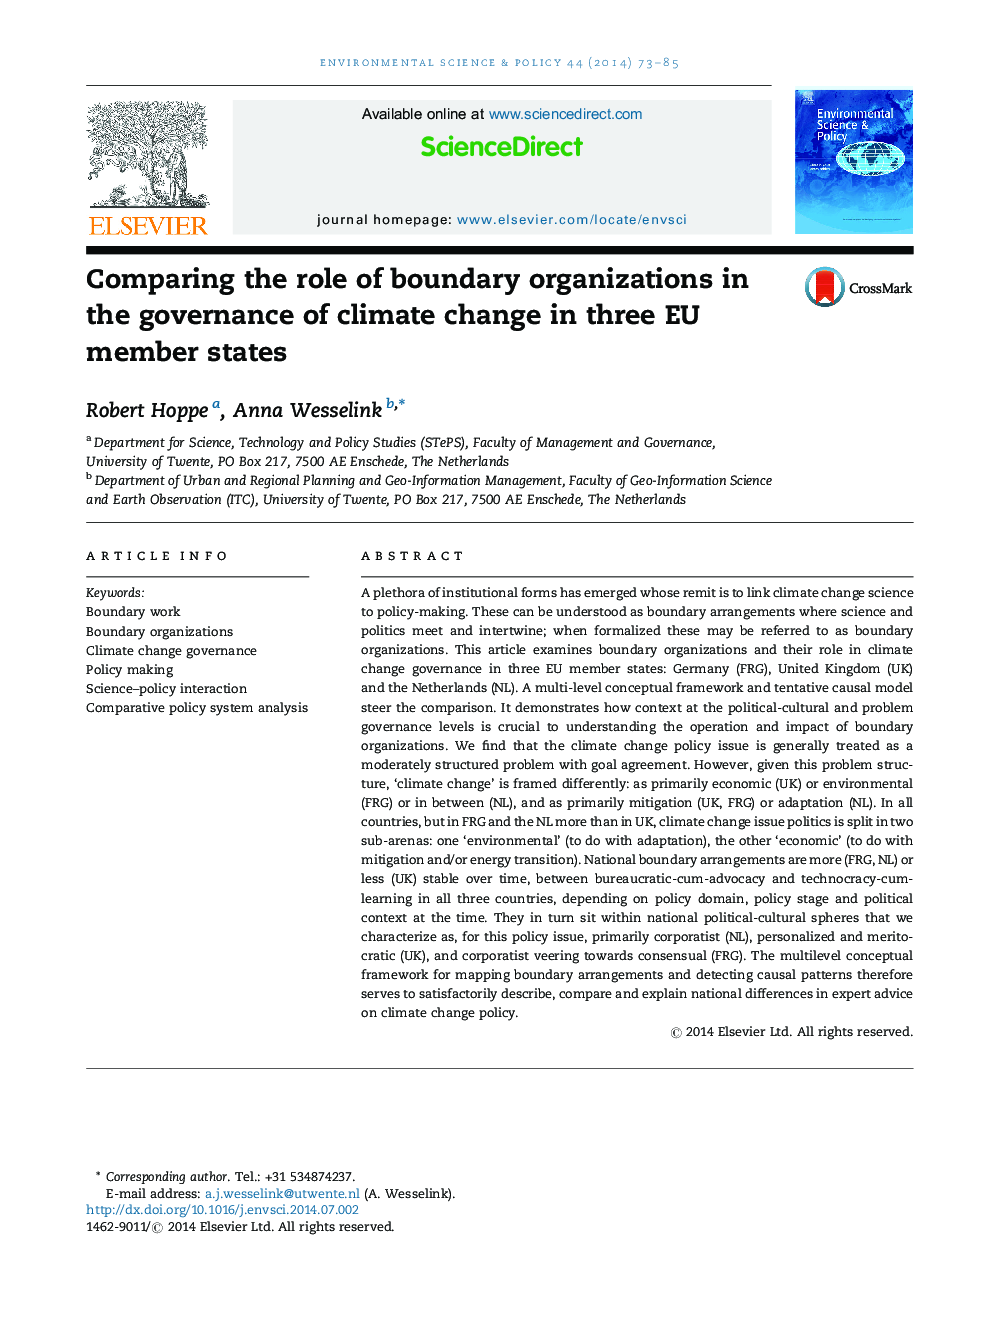 مقایسه نقش سازمان های مرزی در مدیریت تغییرات اقلیمی در سه کشور عضو اتحادیه اروپا 